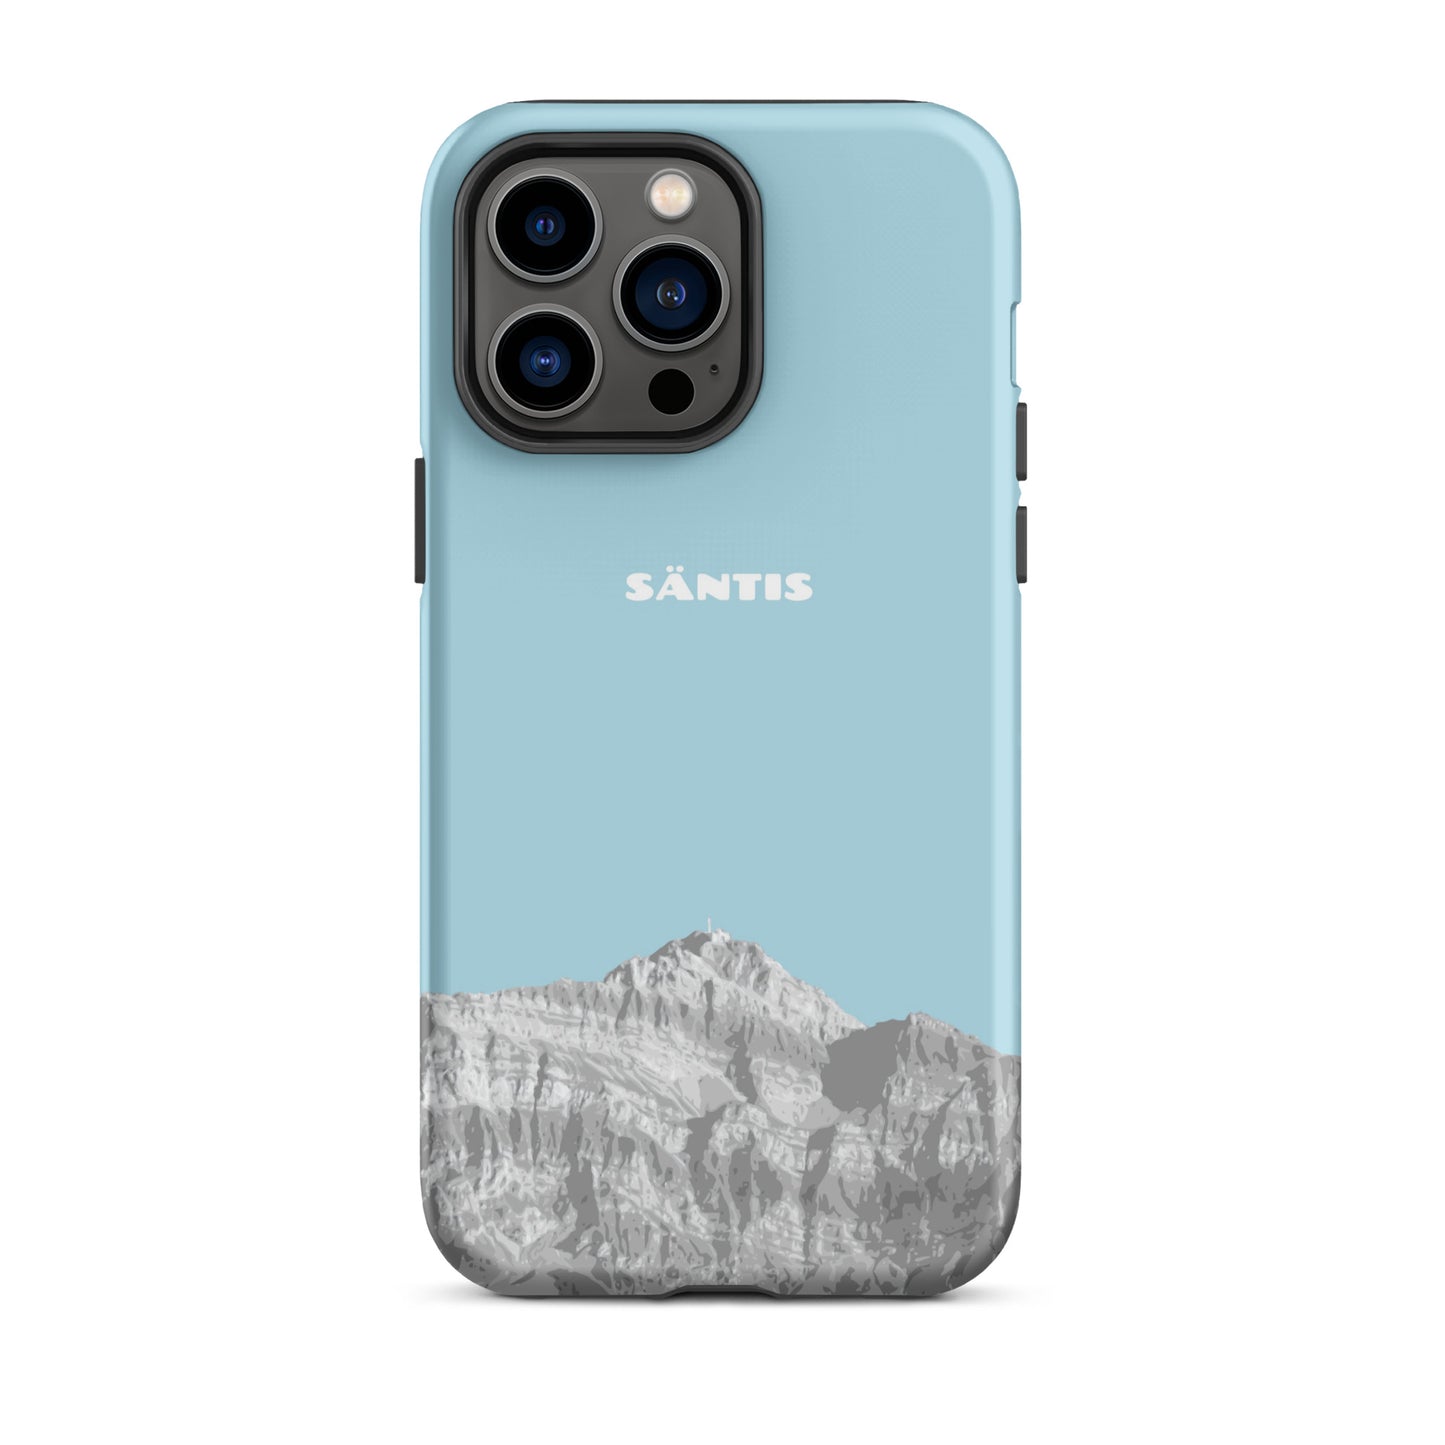 Hülle für das iPhone 14 Pro Max von Apple in der Farbe Hellblau, dass den Säntis im Alpstein zeigt.